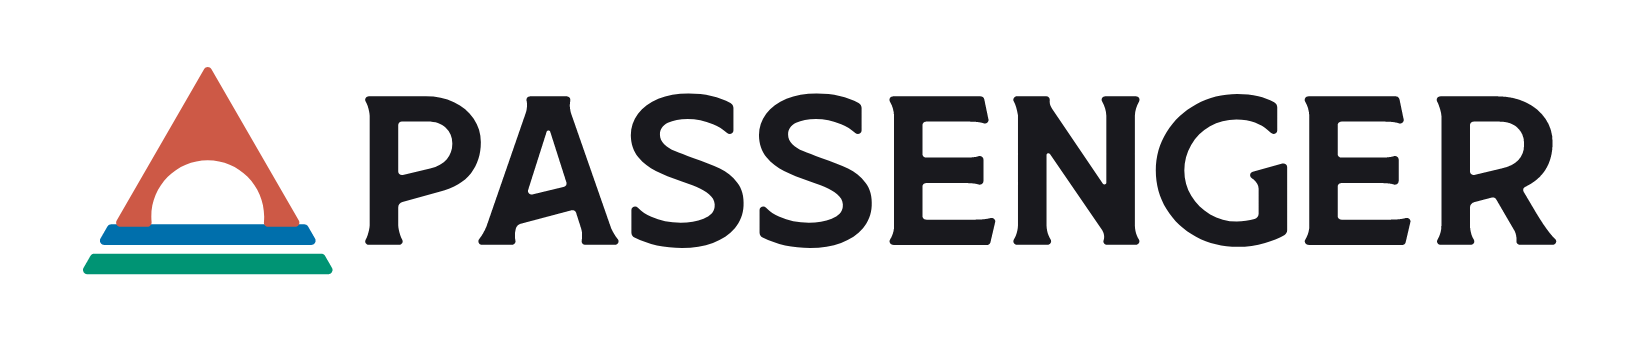 Passenger Support 2.0 logo